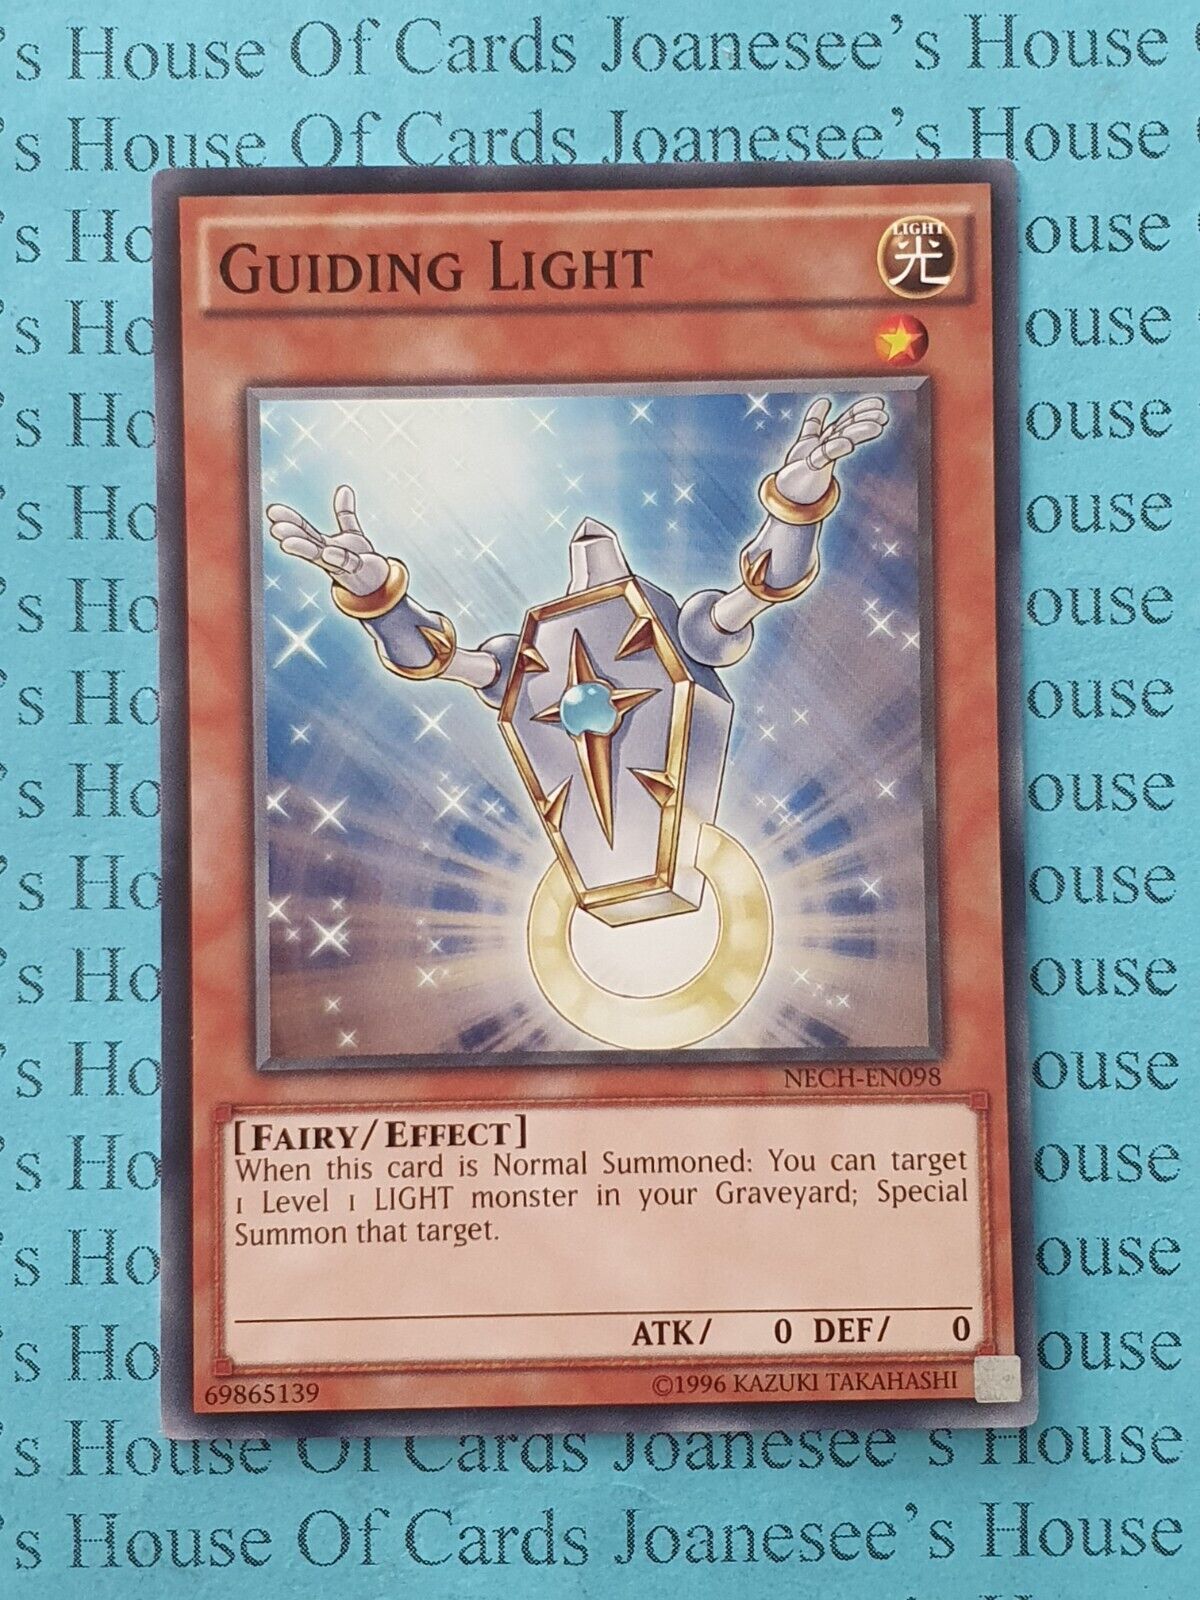 NECH-EN098 Guiding Light Yu-Gi-Oh Card (Unl) New